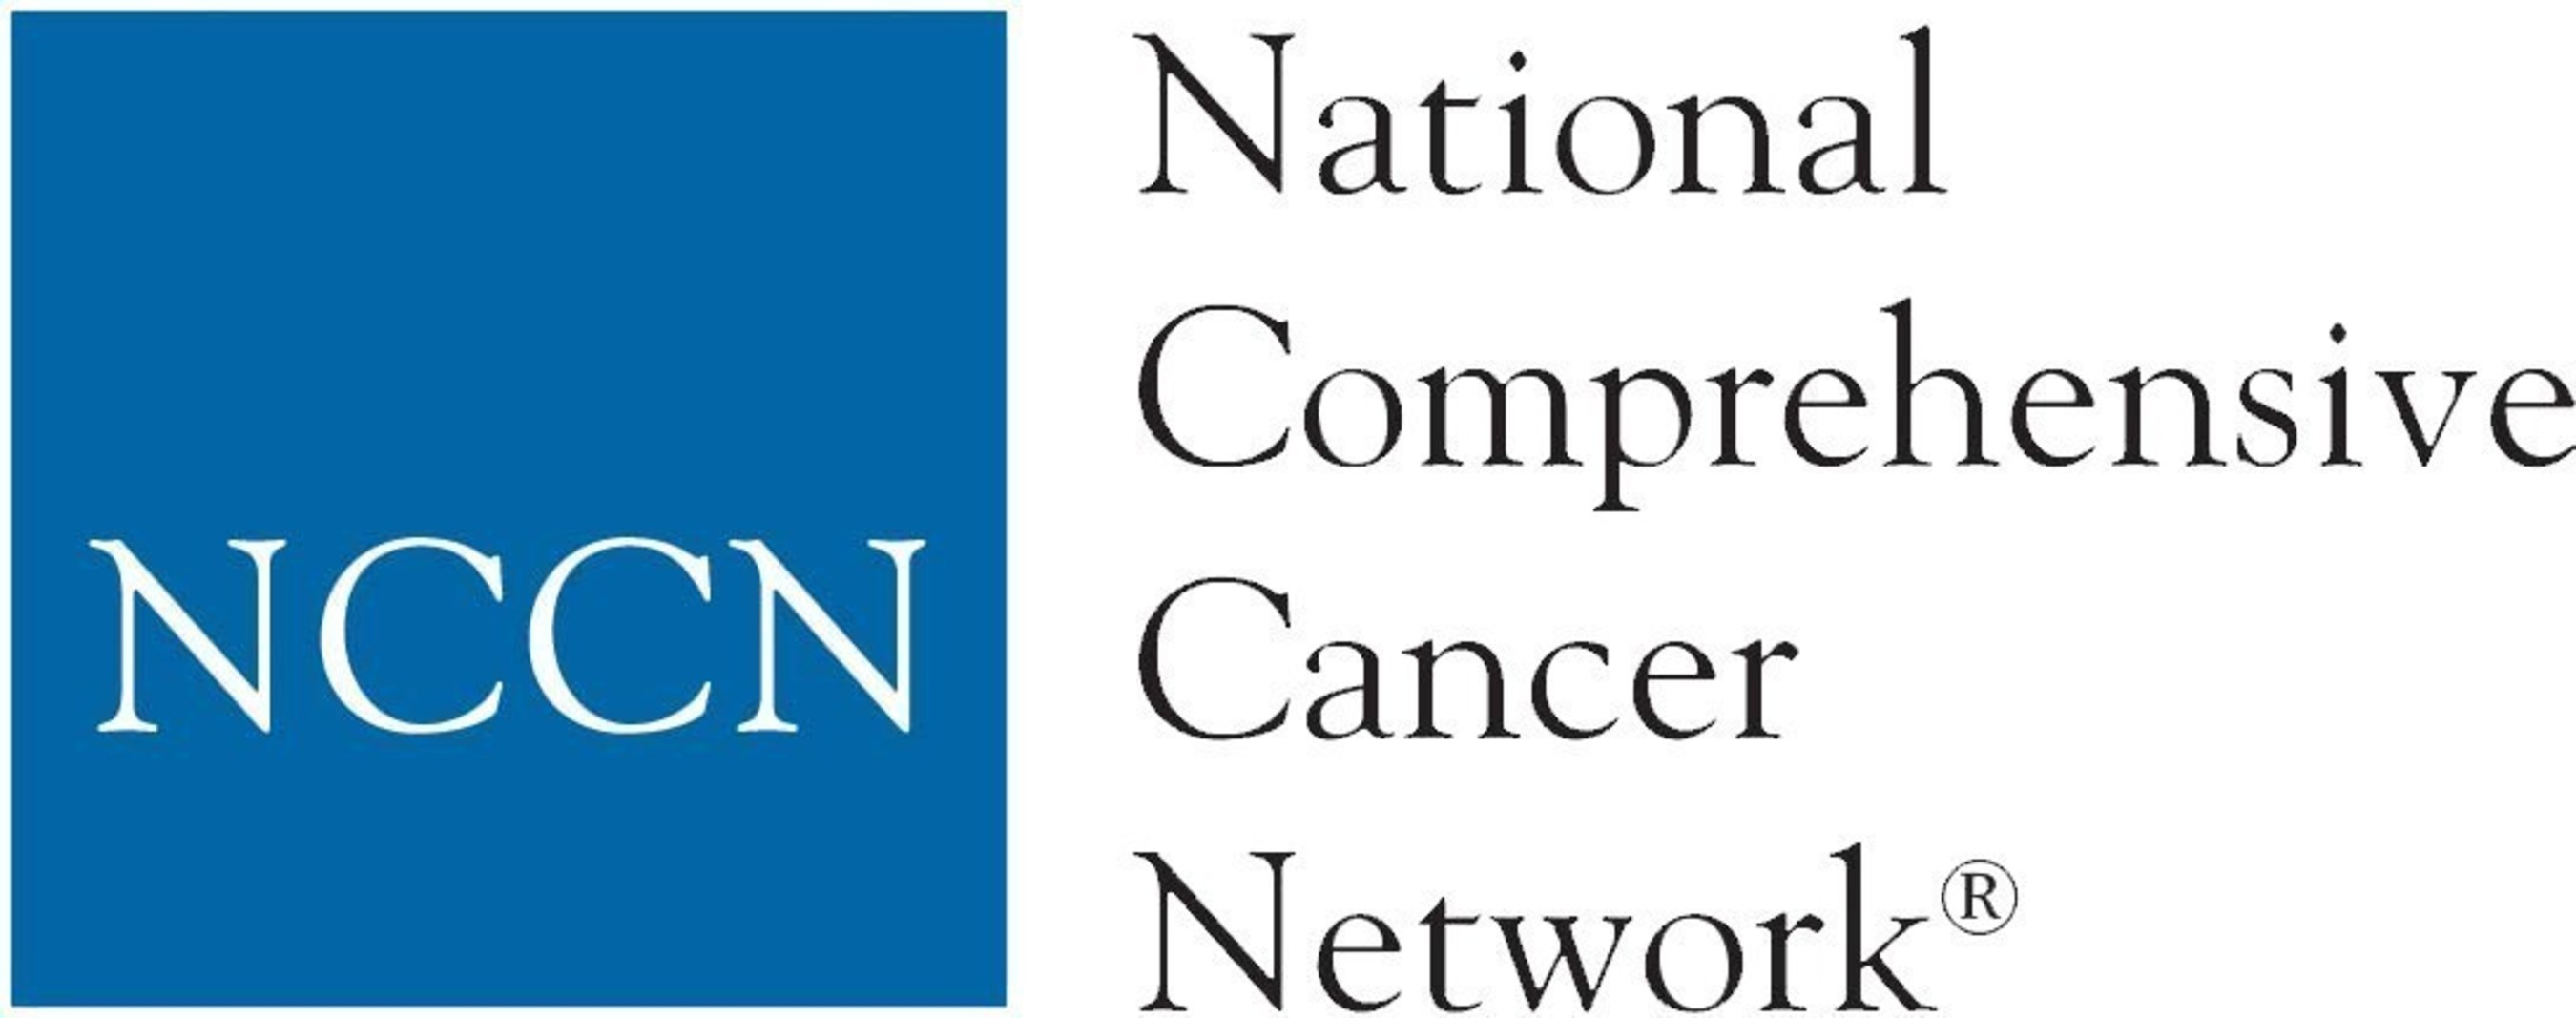 National Comprehensive Cancer Network (NCCN) logo | Image credit: NCCN